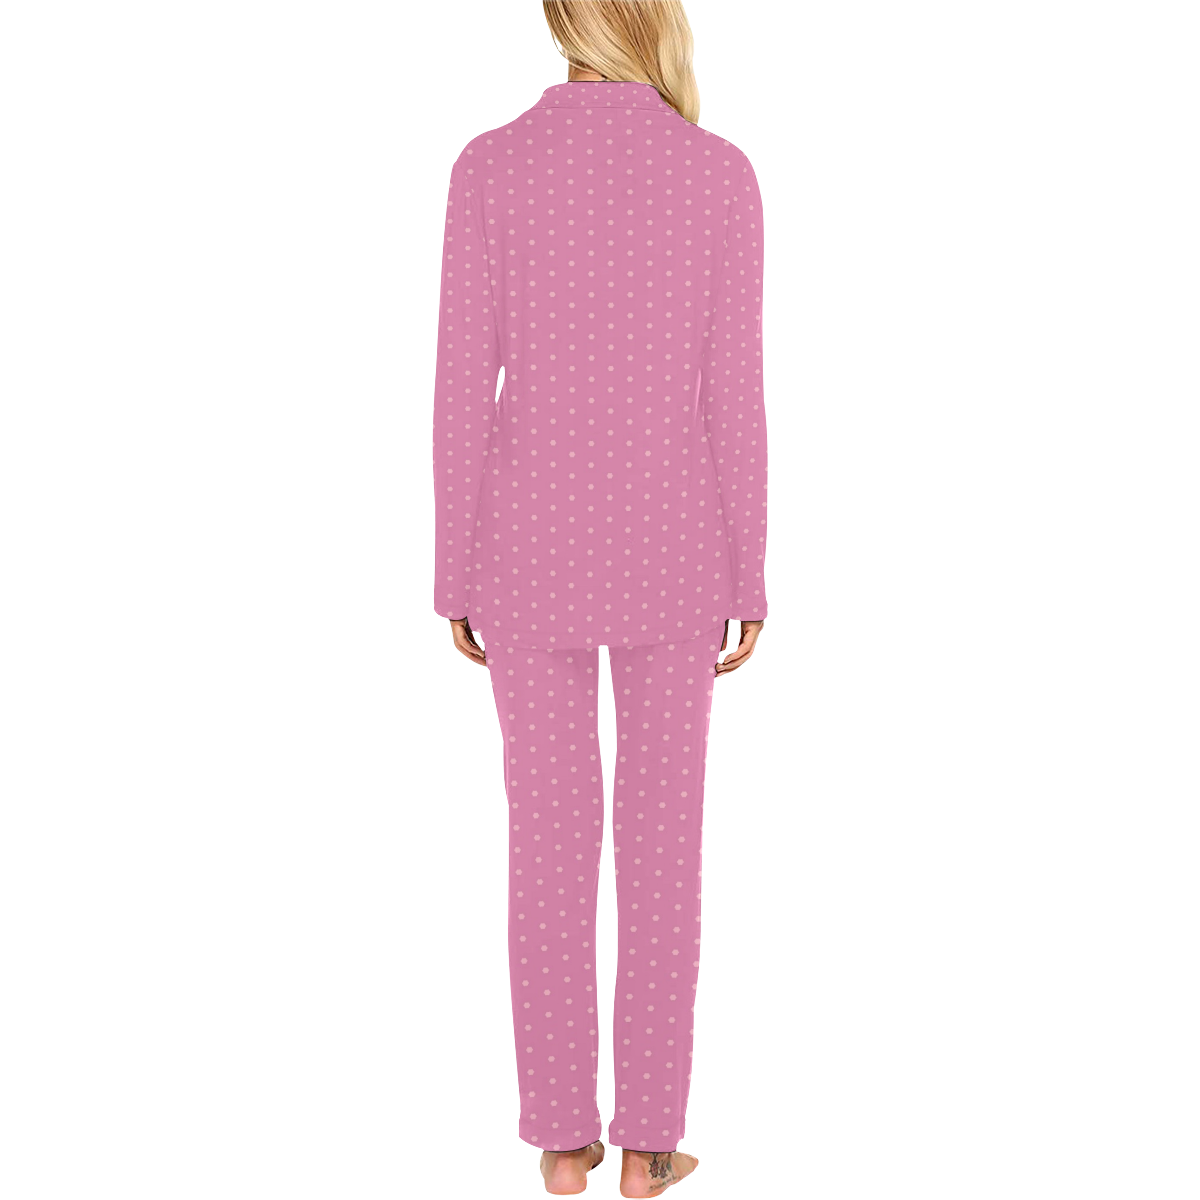 Polka Dotted Pink Women's Long Pajama Set